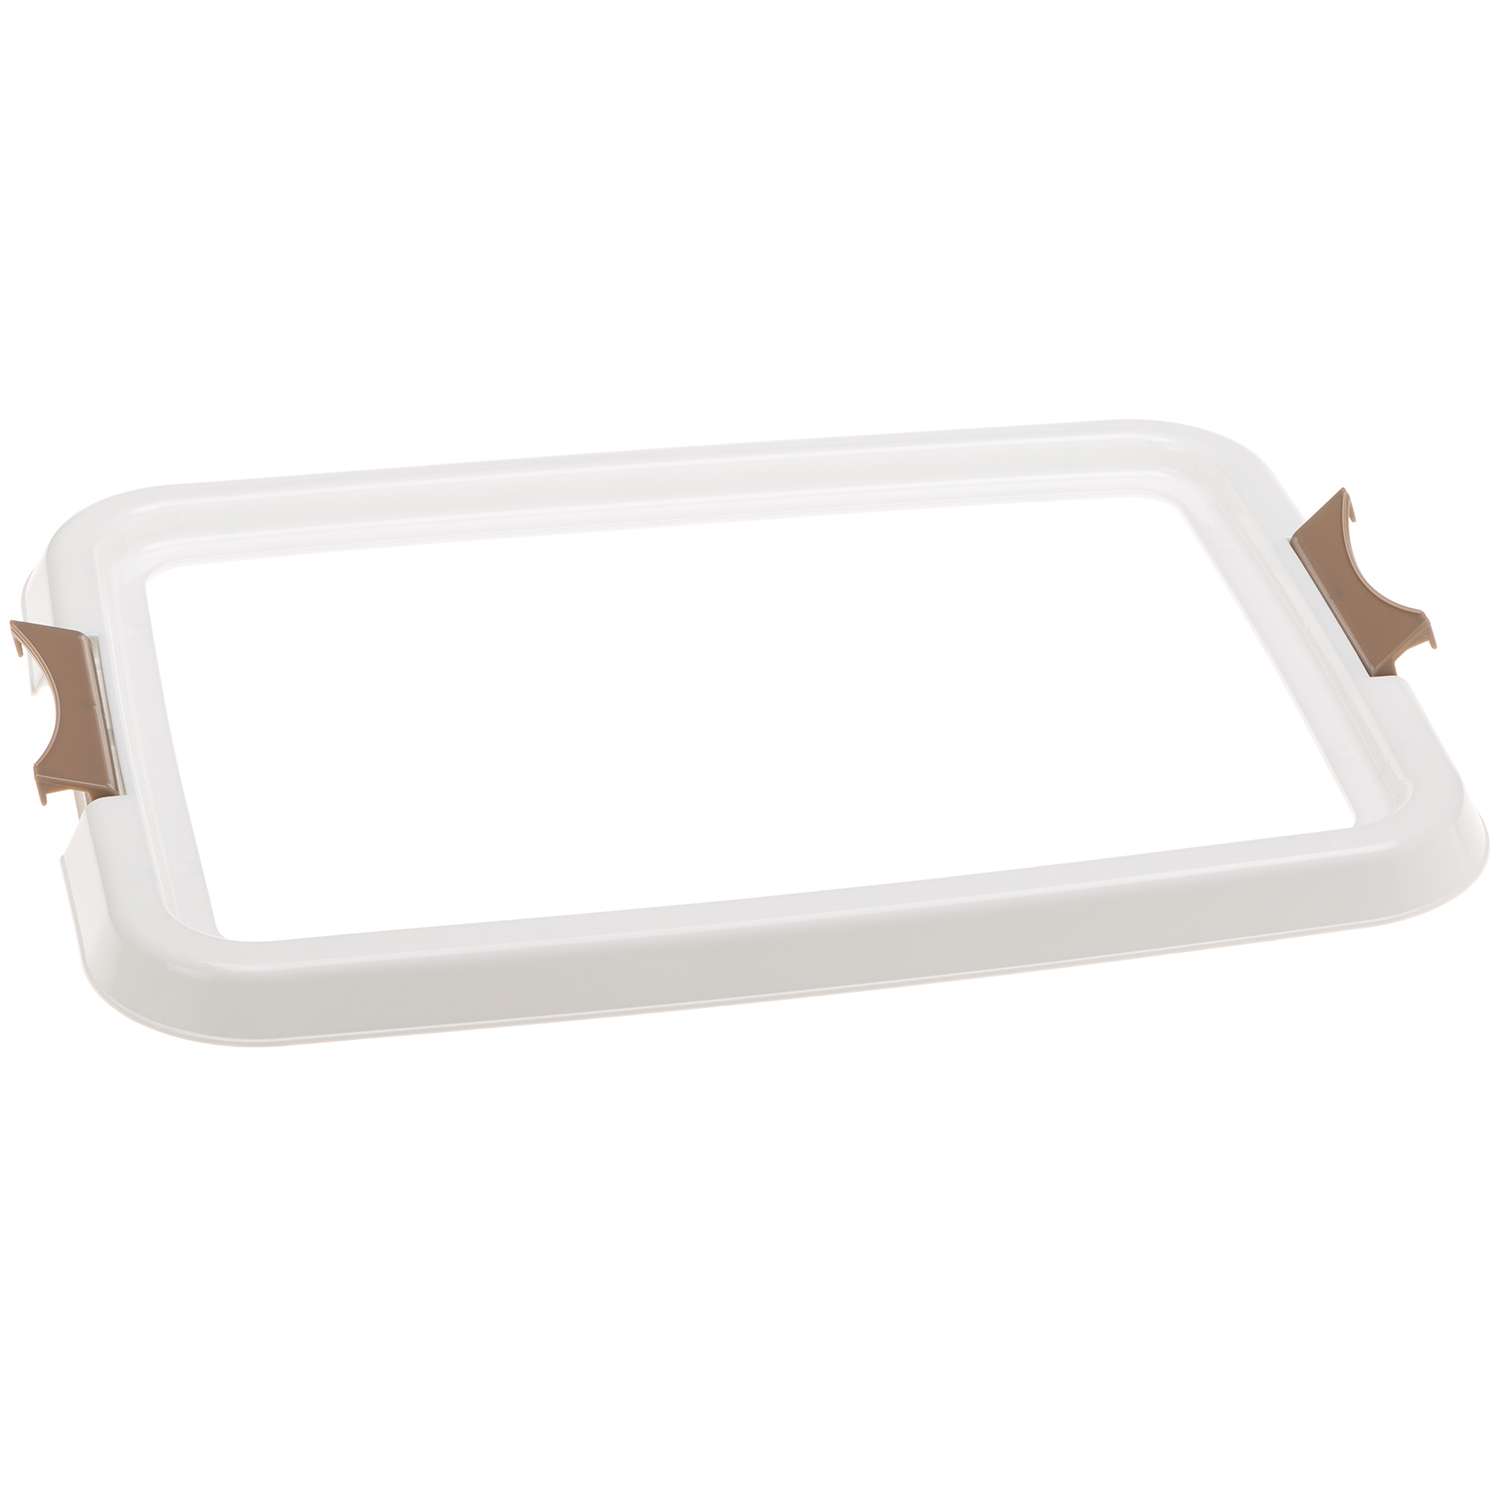 Лоток Ferplast Hygienic pad tray S 85346311 - фото 4